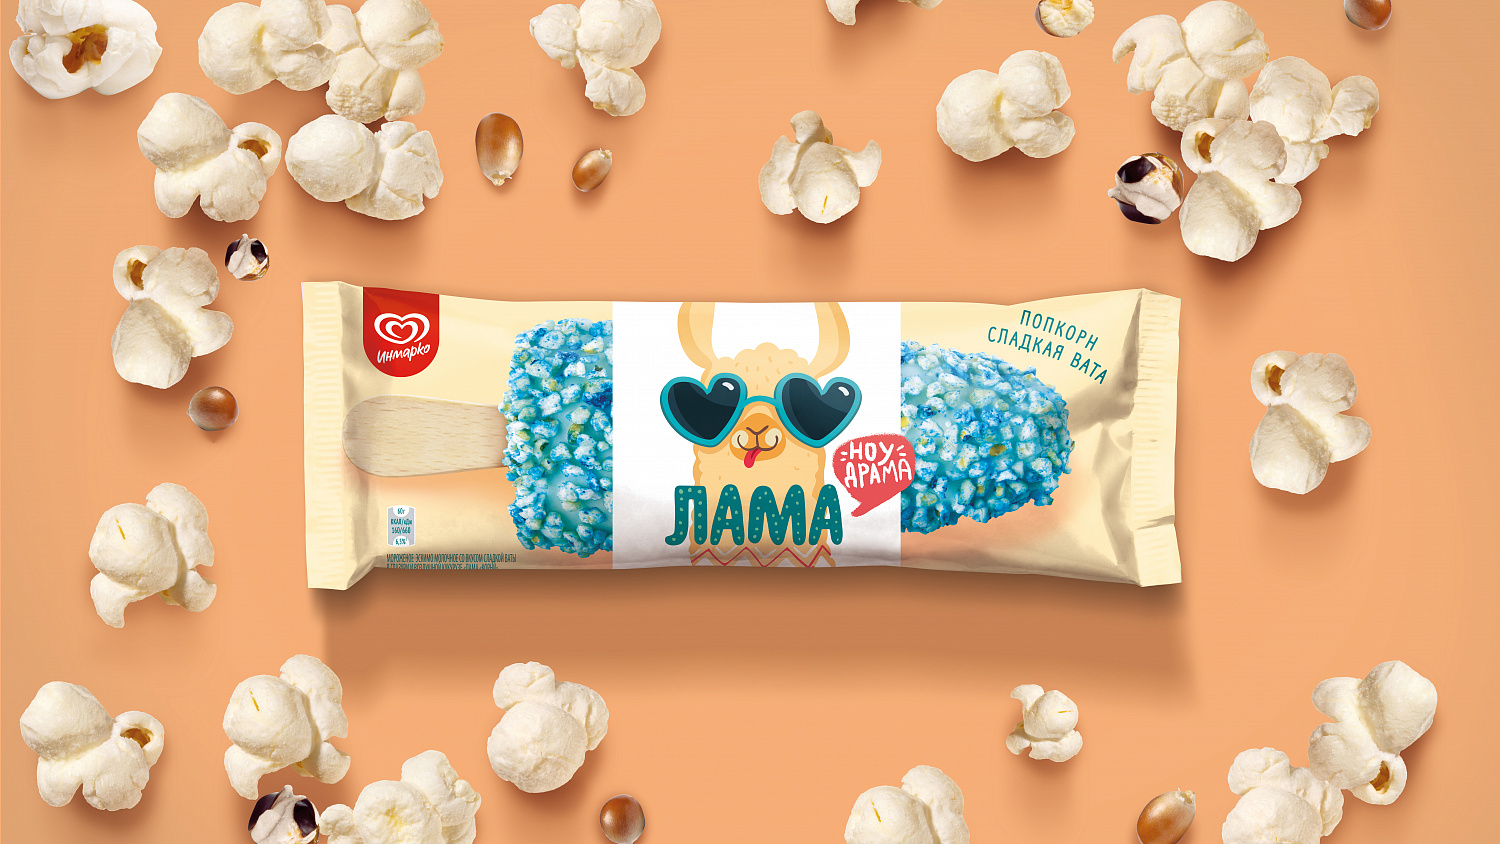 Лама ноу драма: визуальная система для мороженого от Инмарко - Портфолио Depot